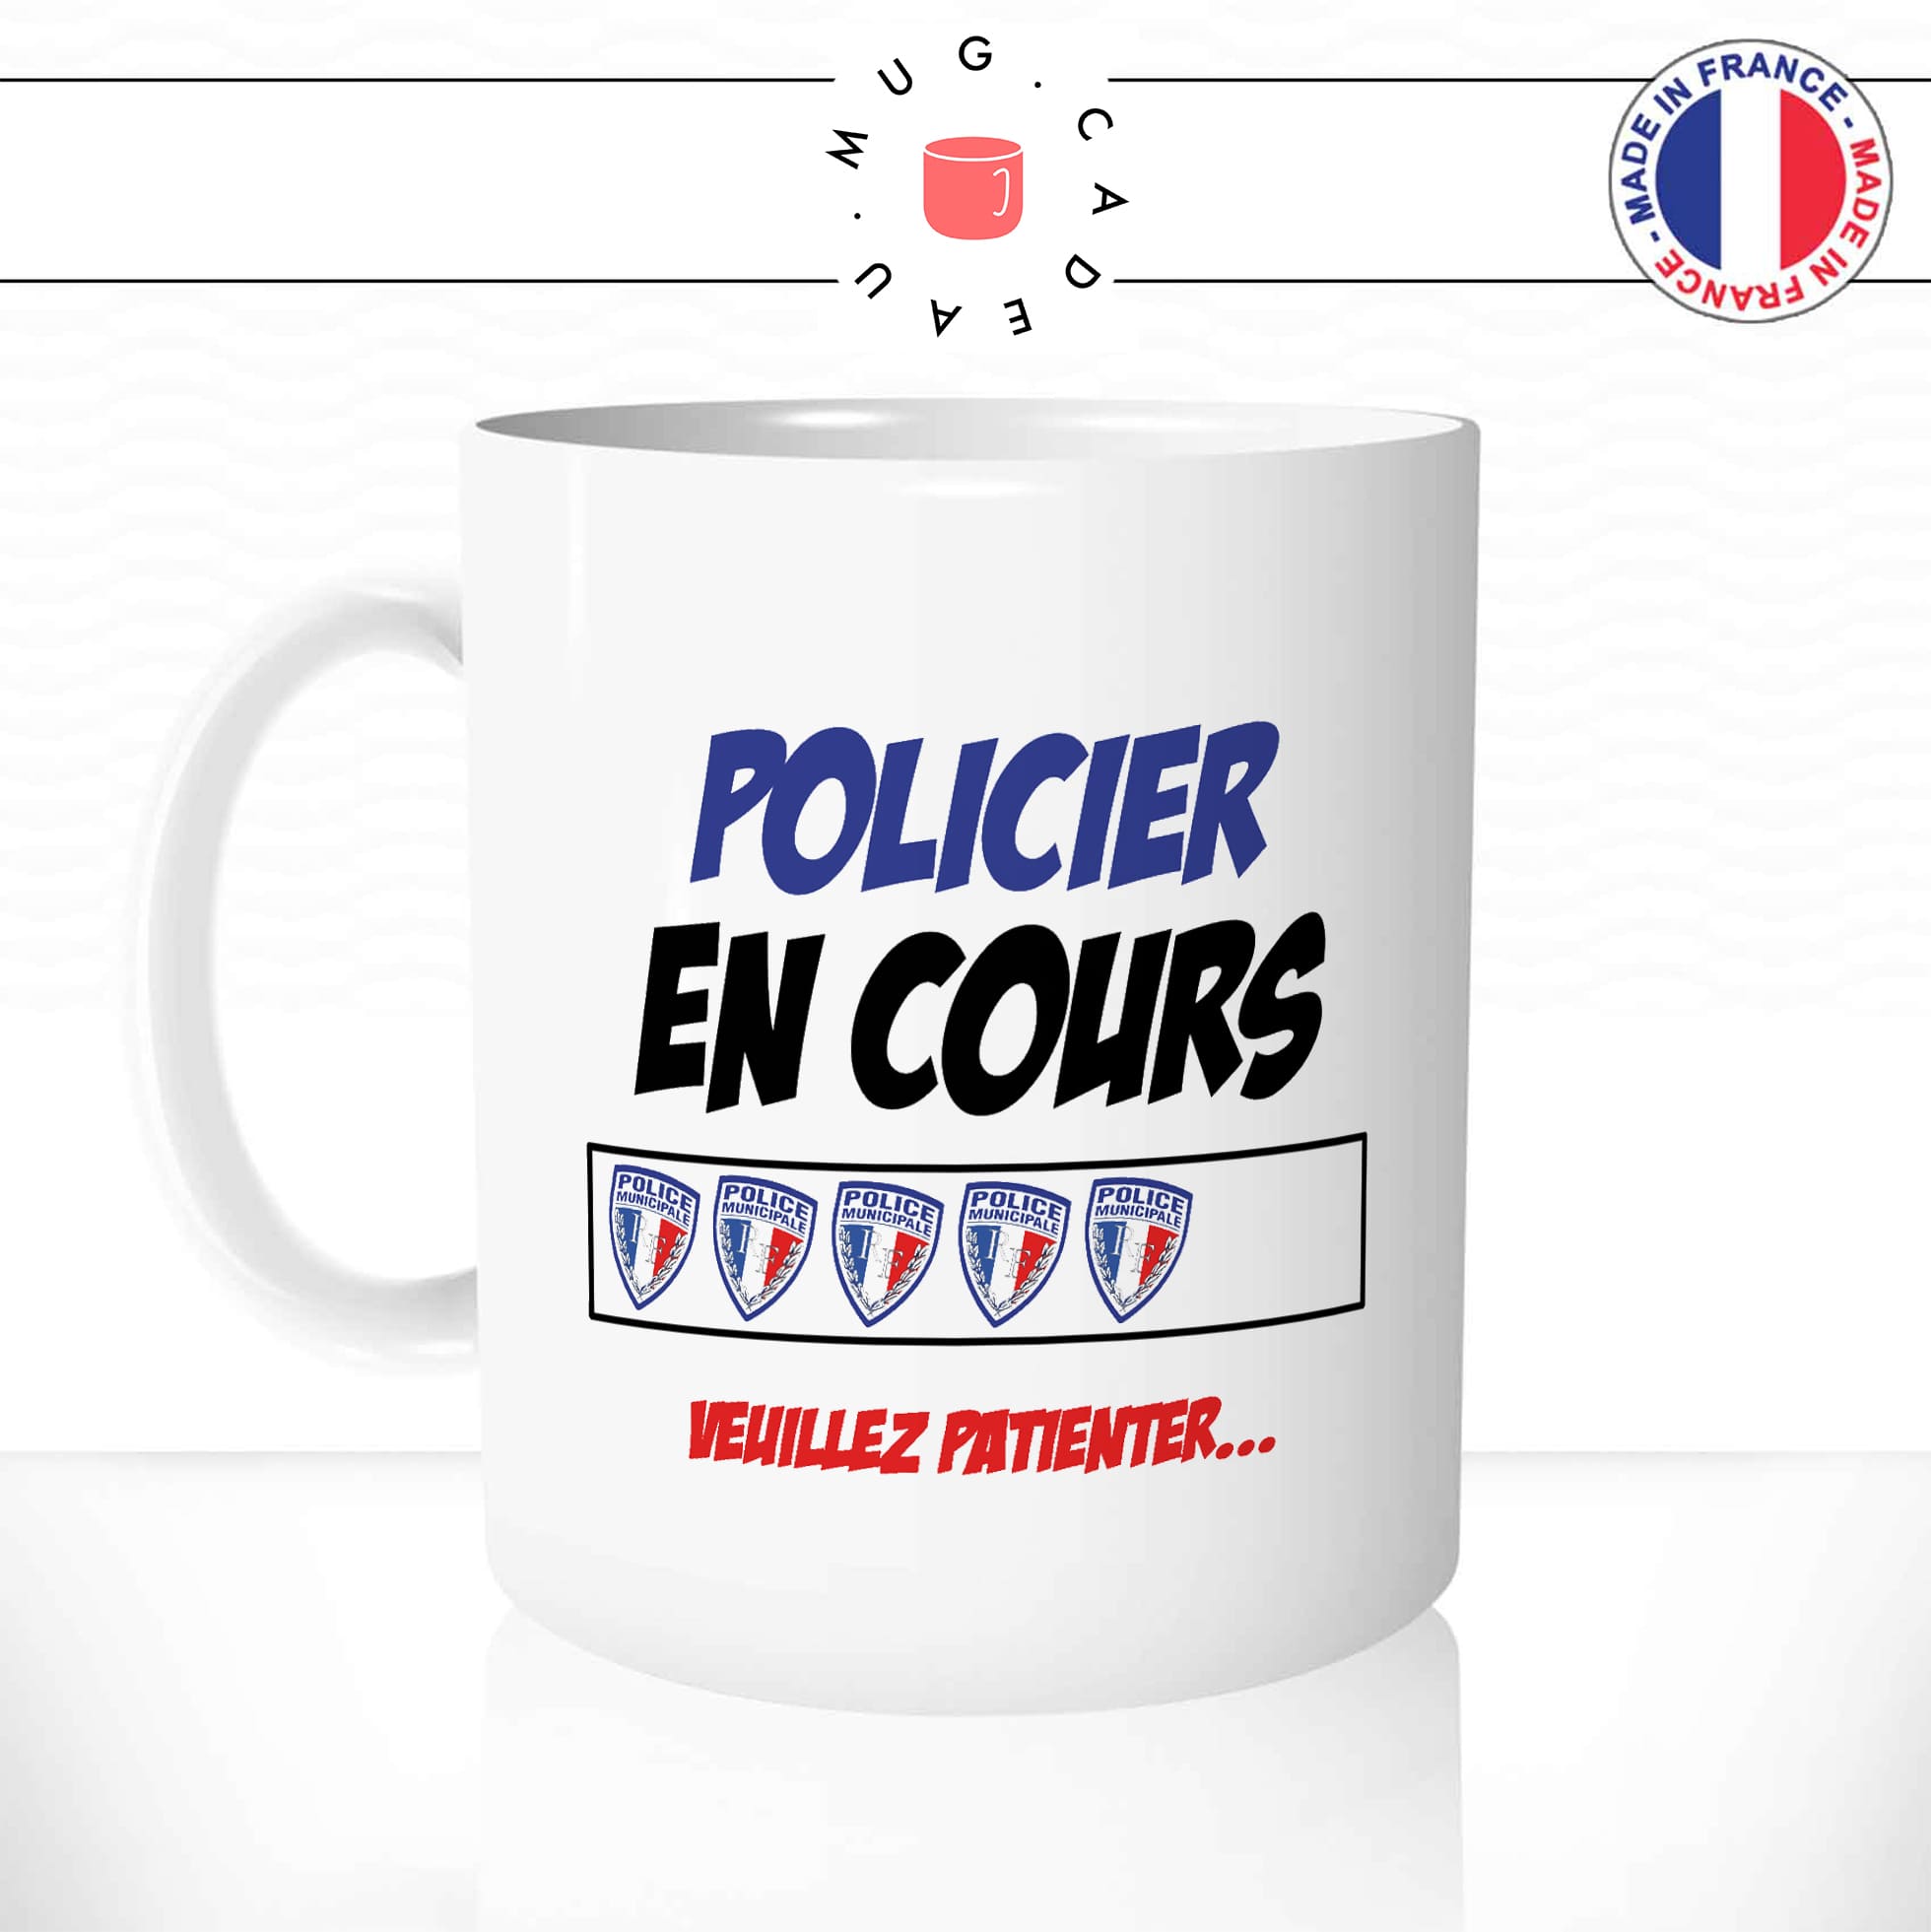 mug-tasse-blanc-unique-policier-en-cours-police-ecole-chargement-flic-homme-femme-humour-fun-cool-idée-cadeau-original-personnalisé